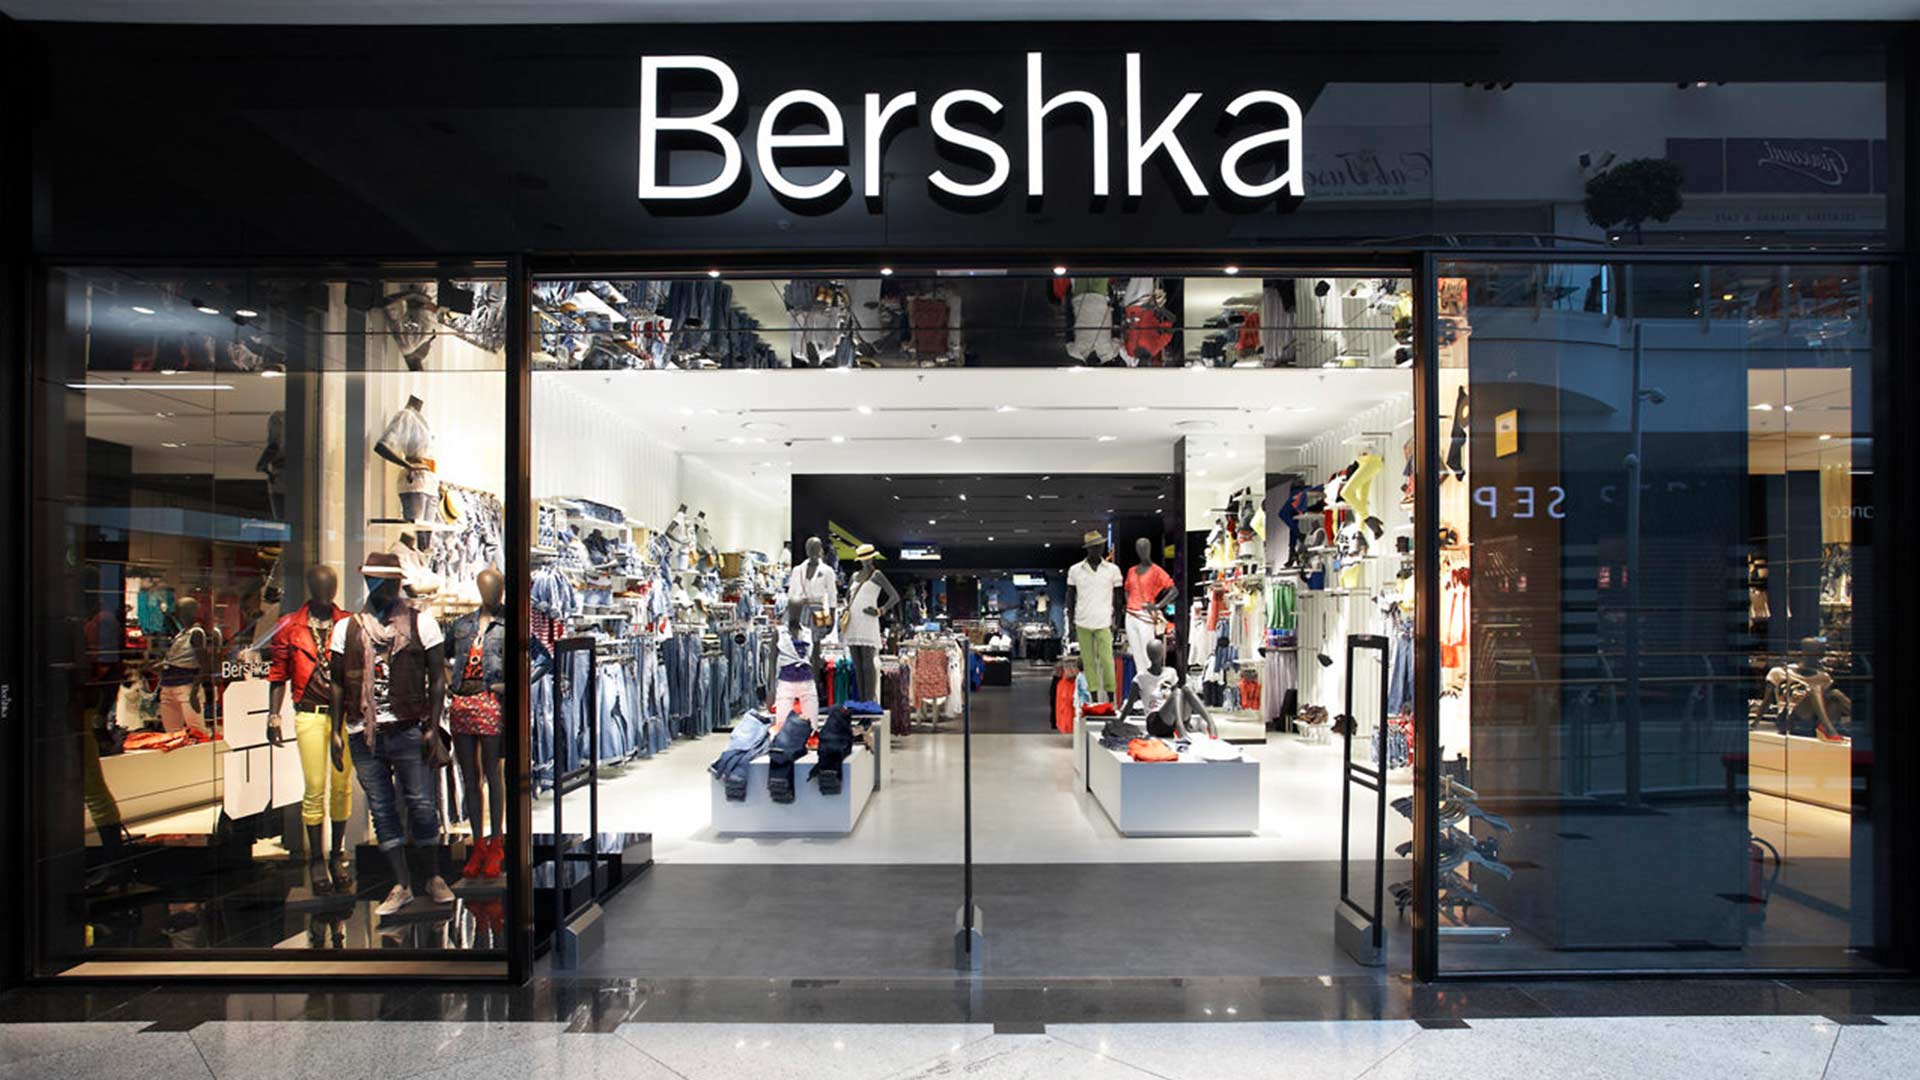 Знаменитый бренд масс-маркета Bershka теперь доступен для заказа в России через наш сервис доставки товаров из Европы — «Каталоги.ру»‎.